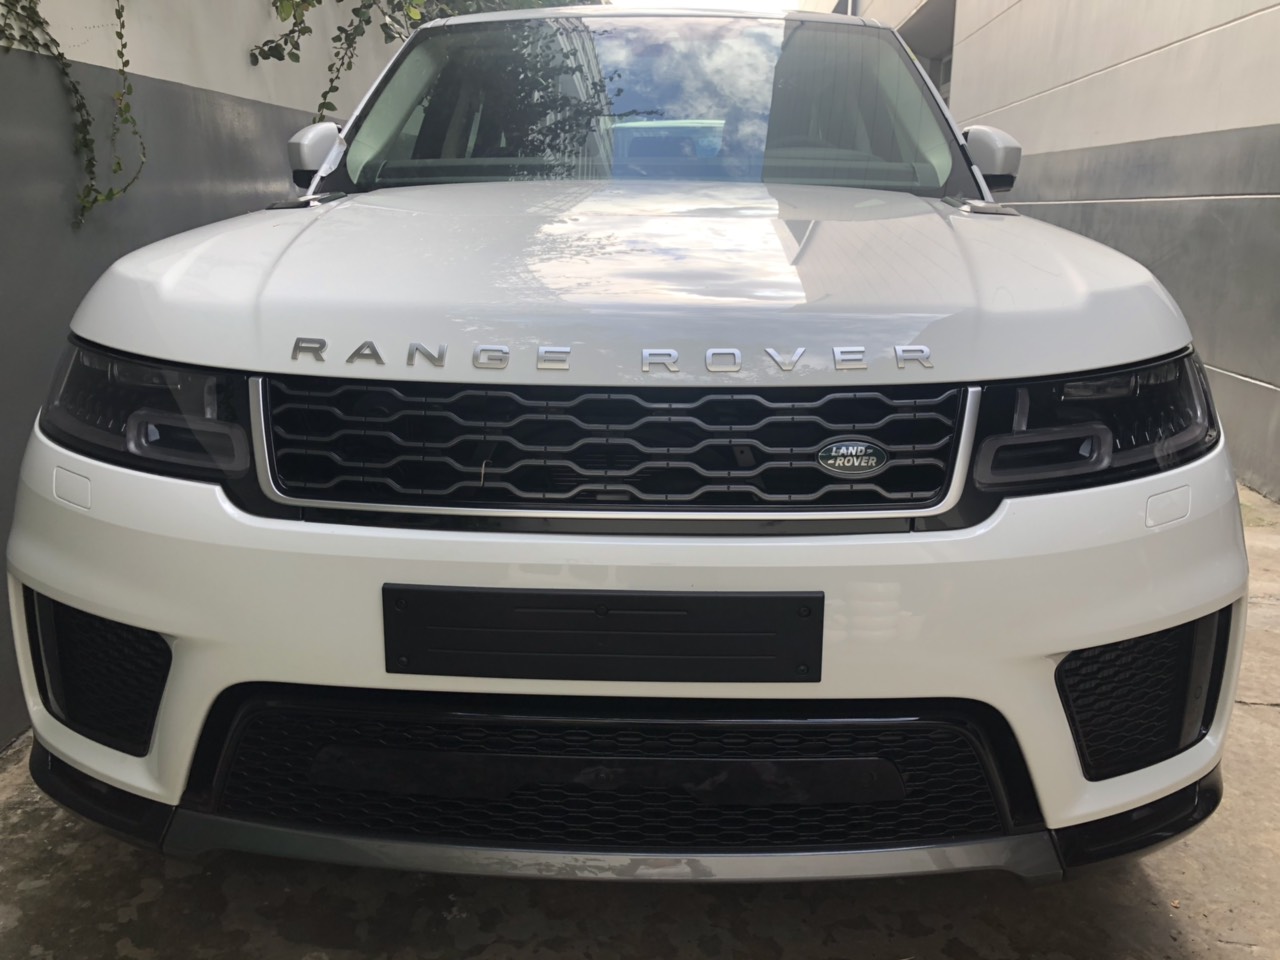 LandRover 2019 - 0932222253 bán xe Range Rover Sport SE - HSE 2020, 7 chỗ, màu trắng, đỏ, xanh, đồng, giao ngay toàn quốc